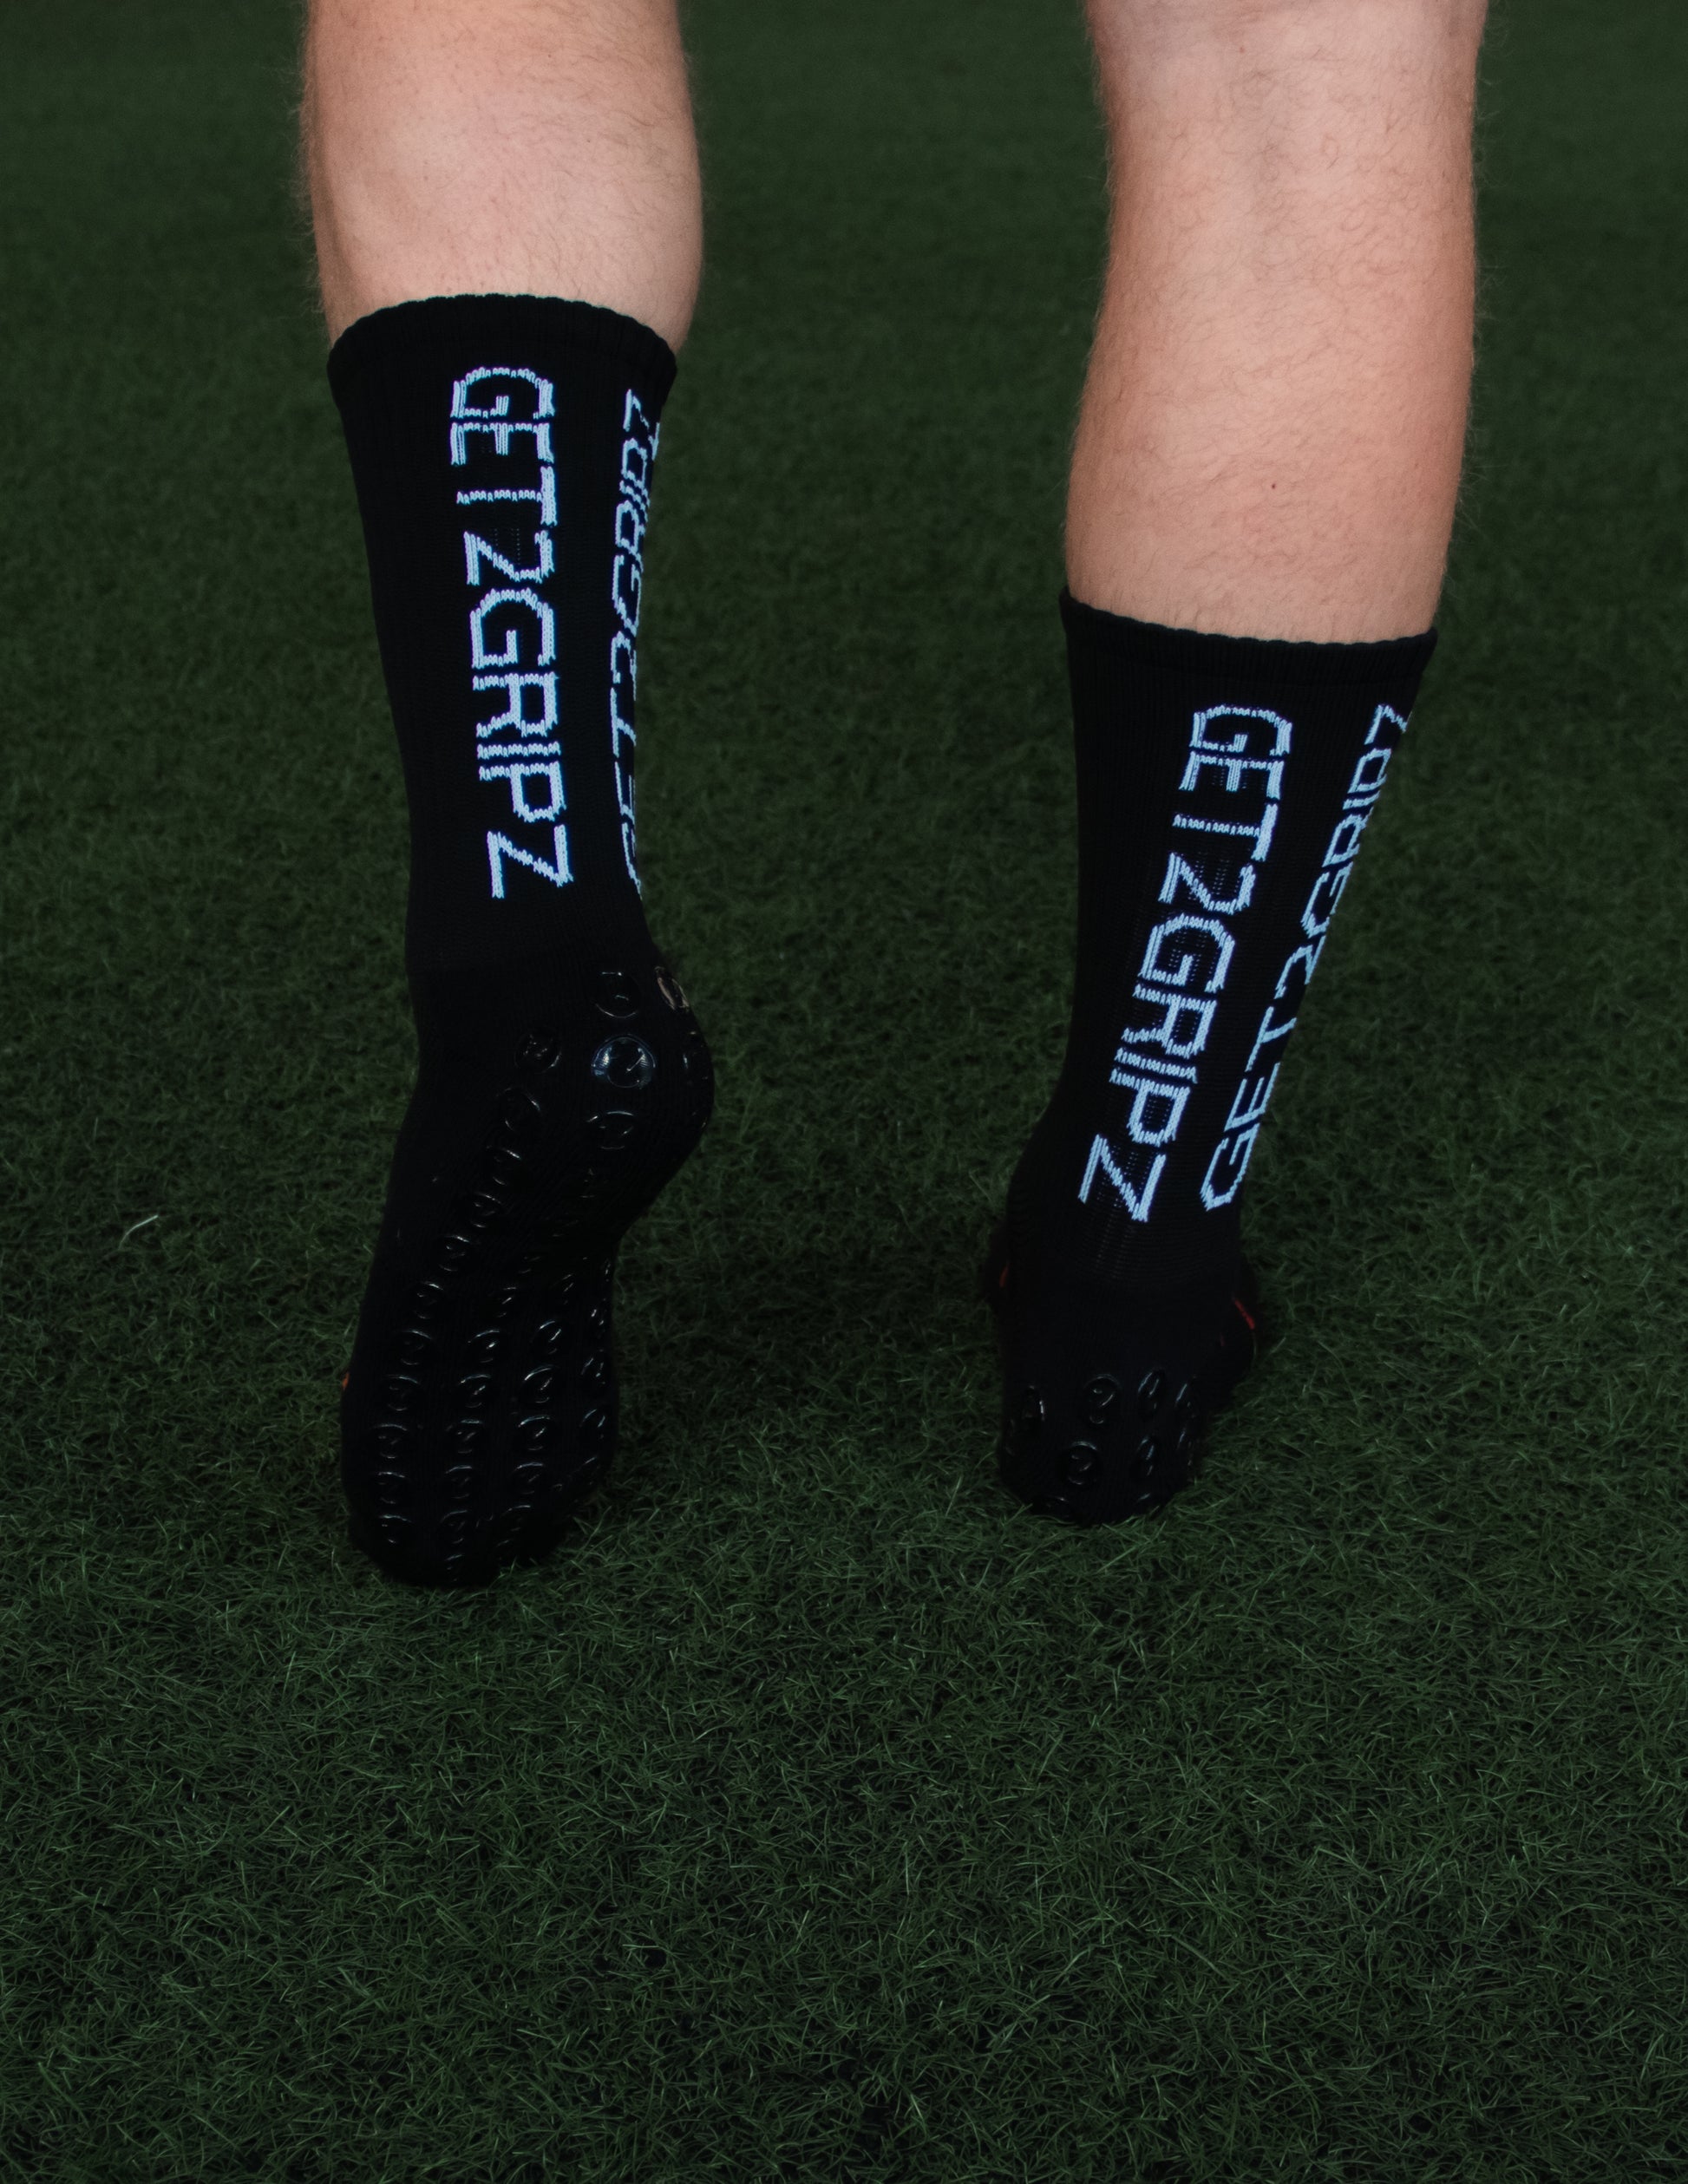 ⚽️GekoSox Soccer Grip Socks Mid Calf/Crew Sizes L (7-12) M (5-8) S (3-6)